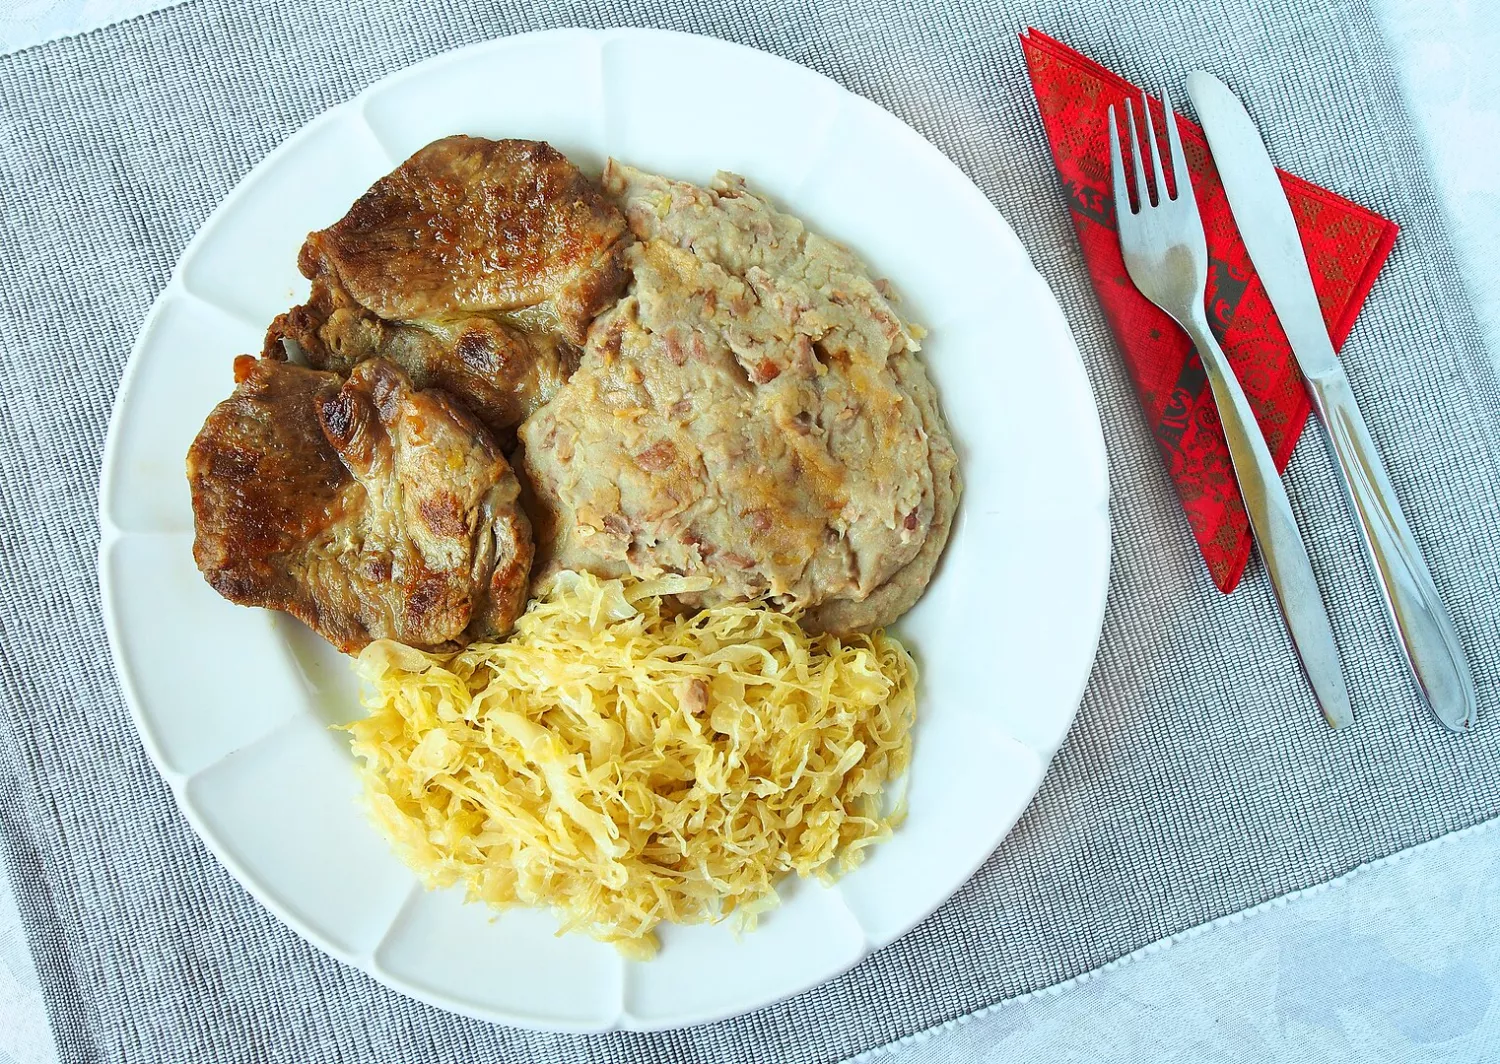 Matevž with roast meat and sauerkraut